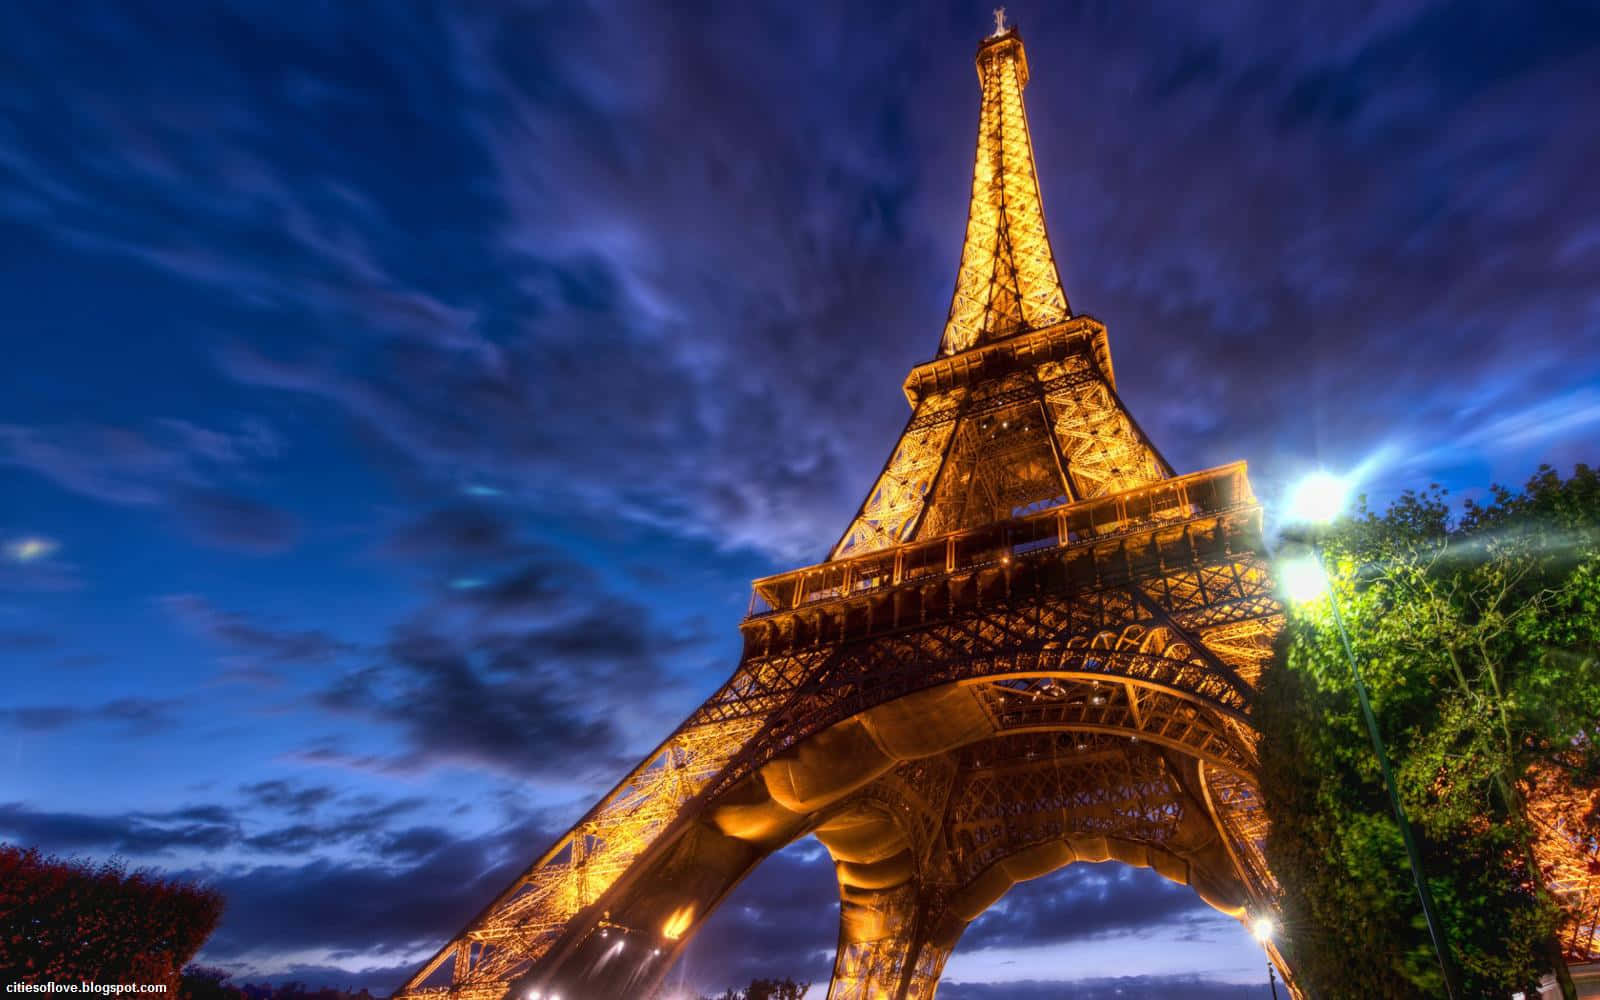 Franskbillede Af Eiffeltårnet Om Natten Til Computer- Eller Mobilbaggrund.